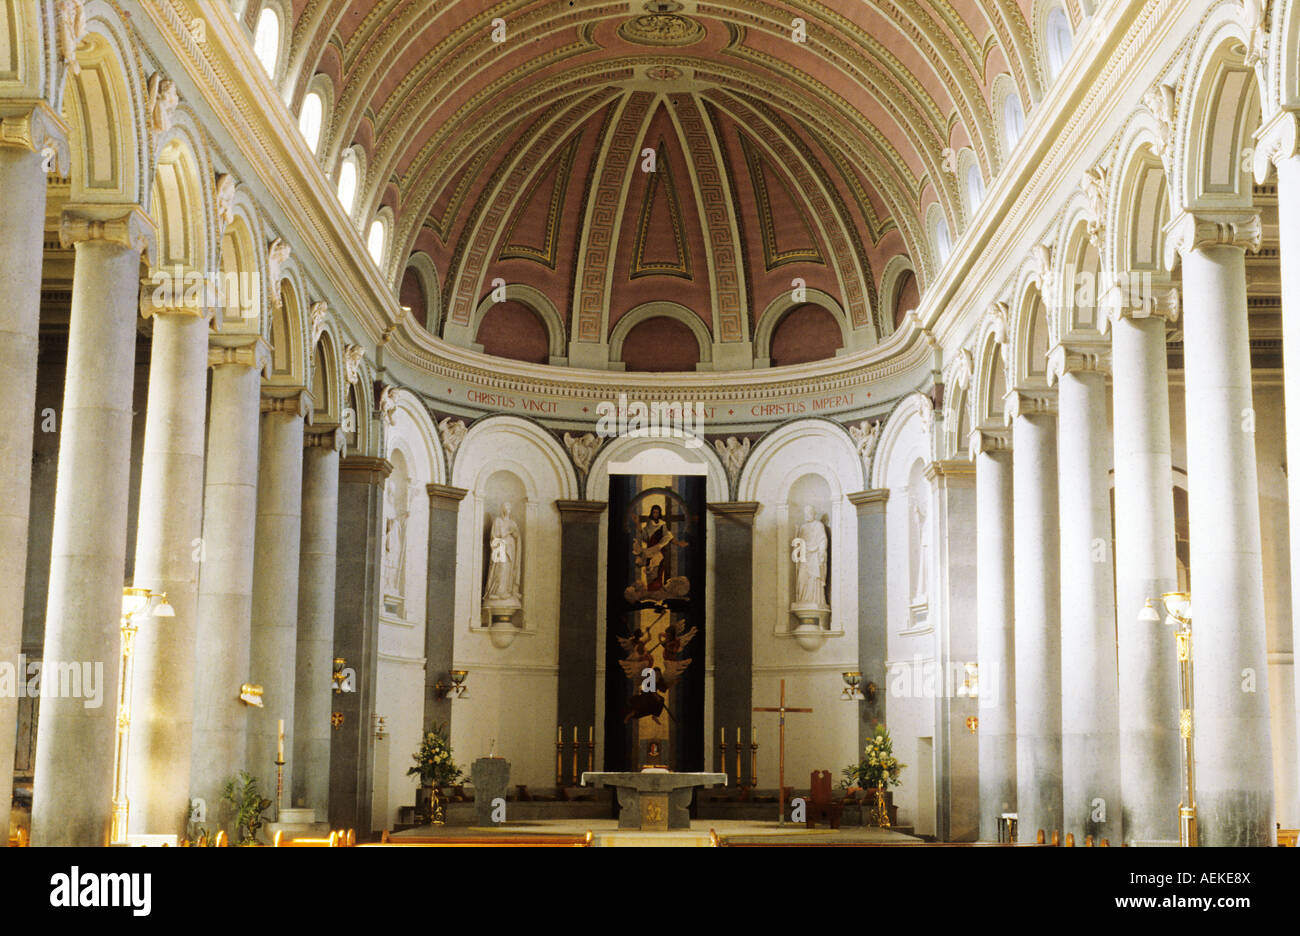 St Mel Kathedrale Longford klassischen Säulen Gewölbedecke Interieur Stockfoto